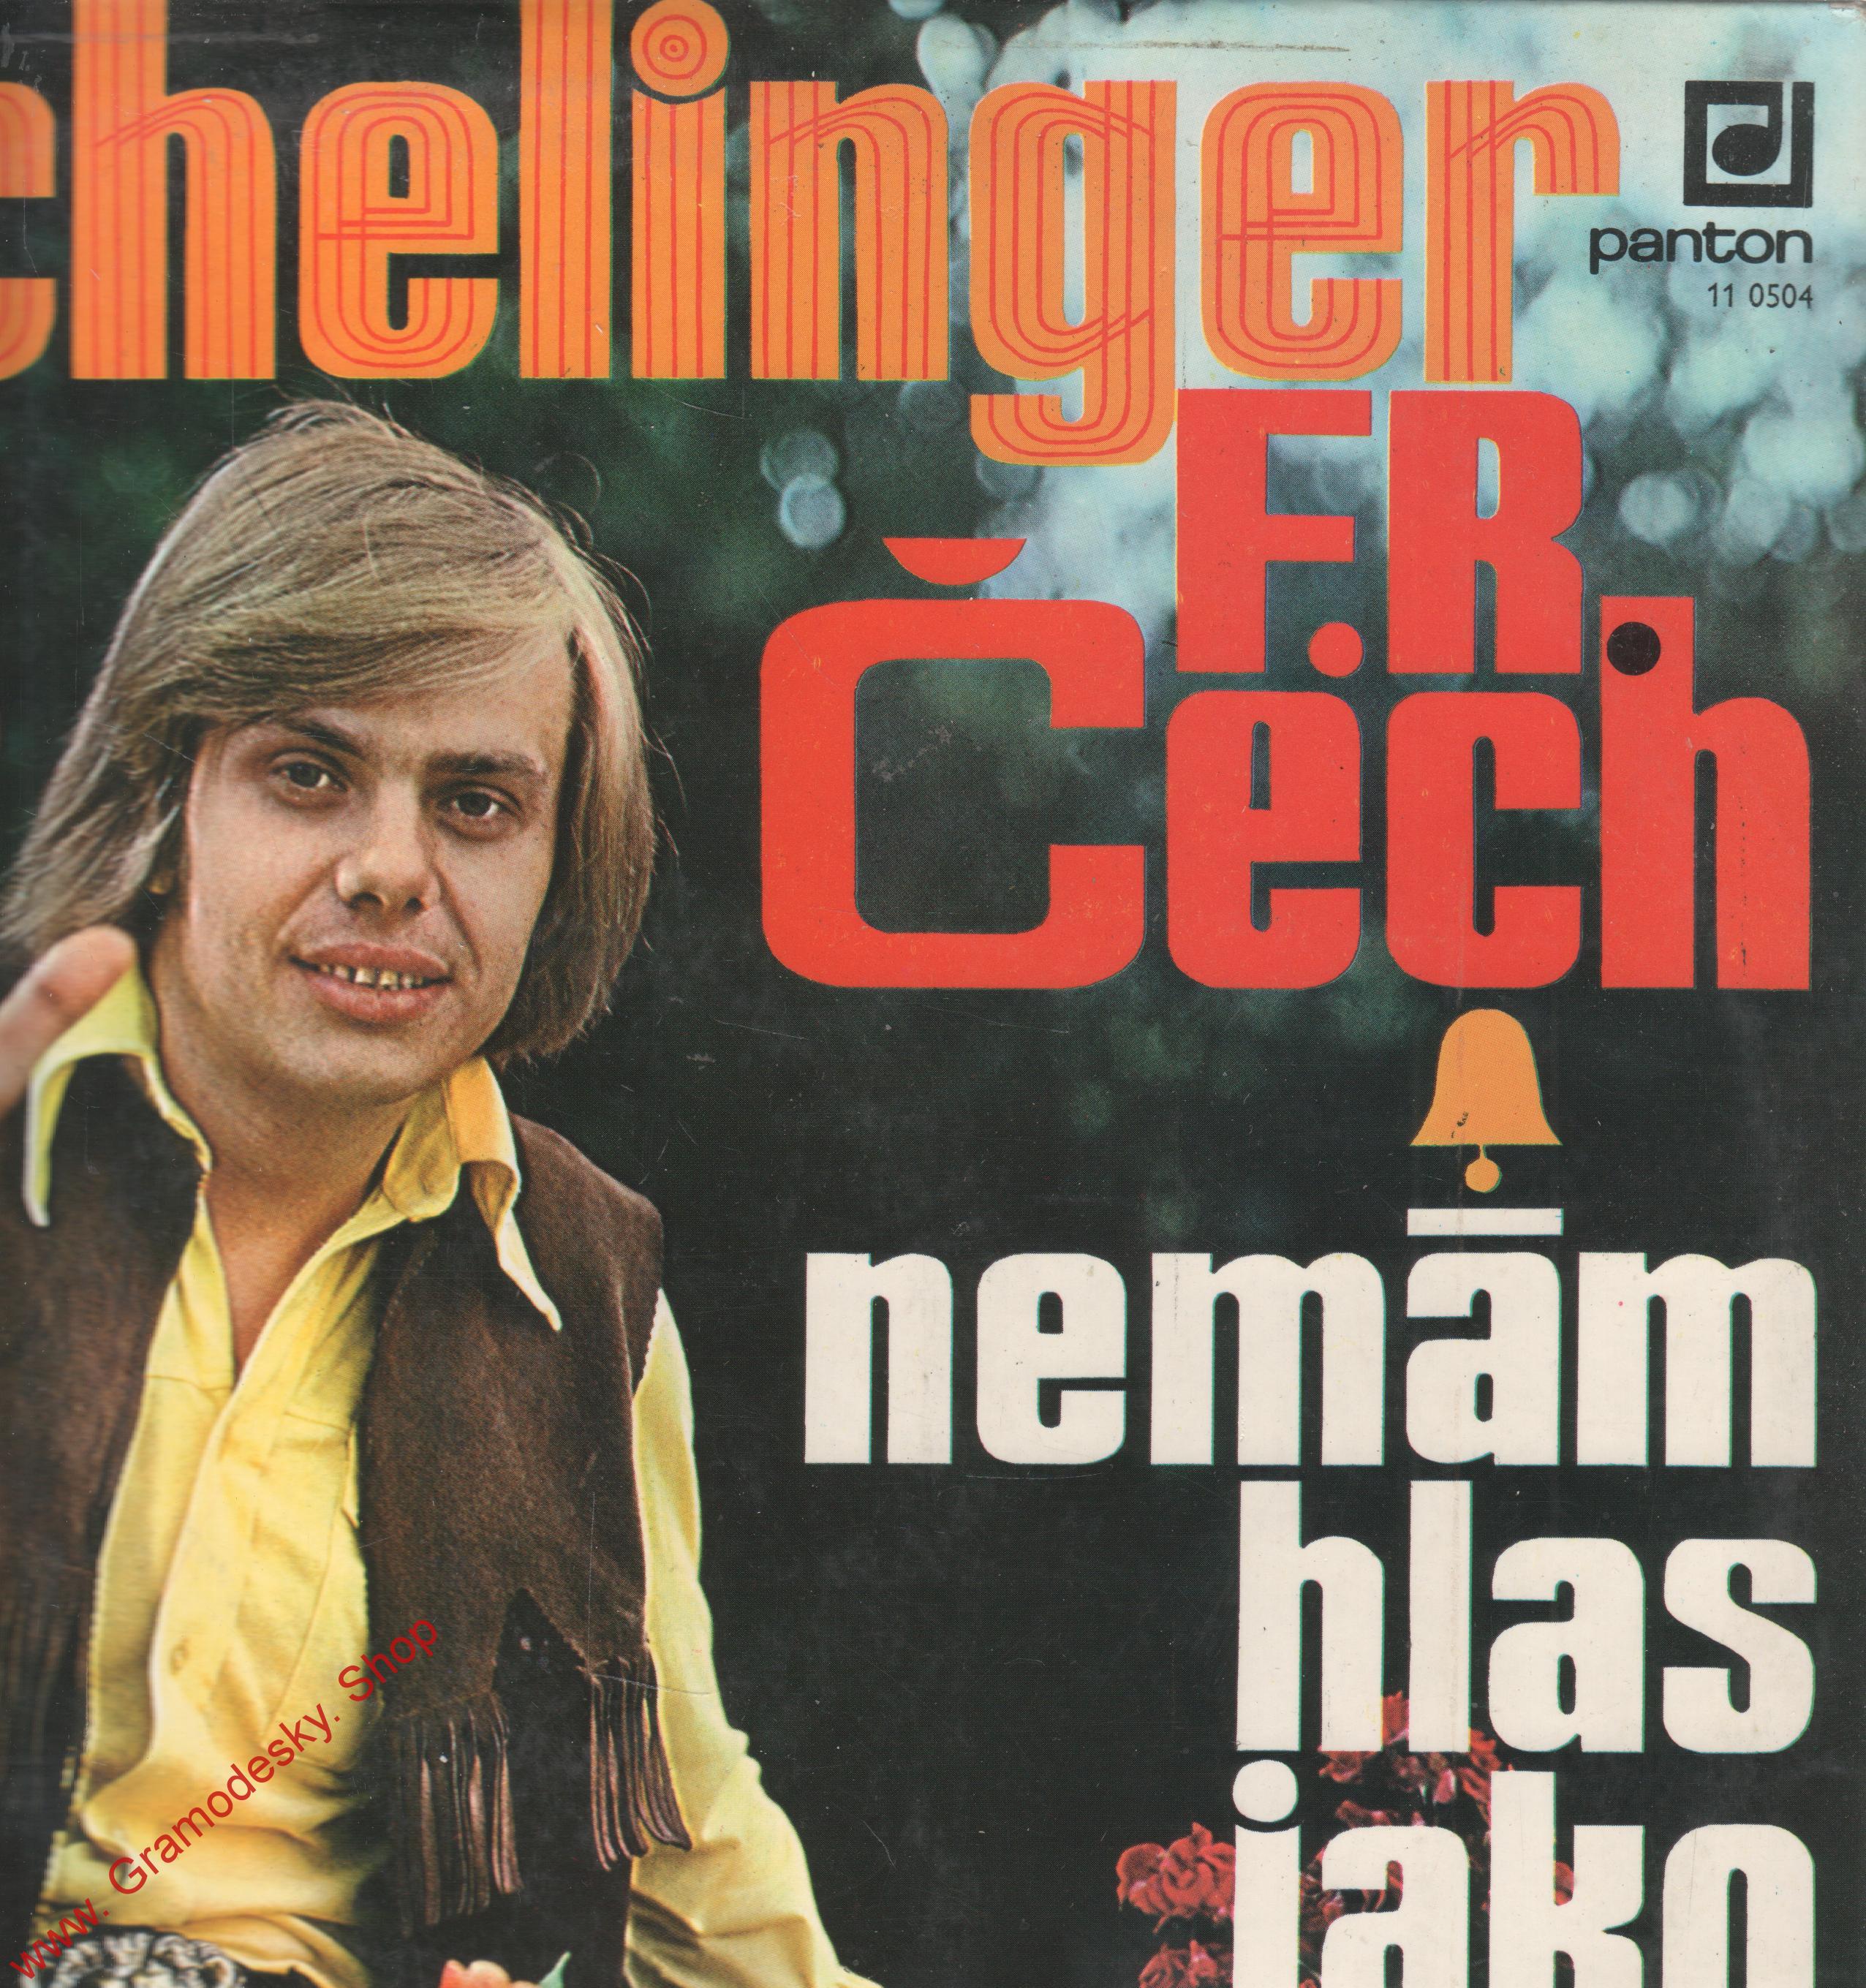 LP Schelinger Jiří, Nemám hlas jako zvon, 1975, 11 0504 G, Panton